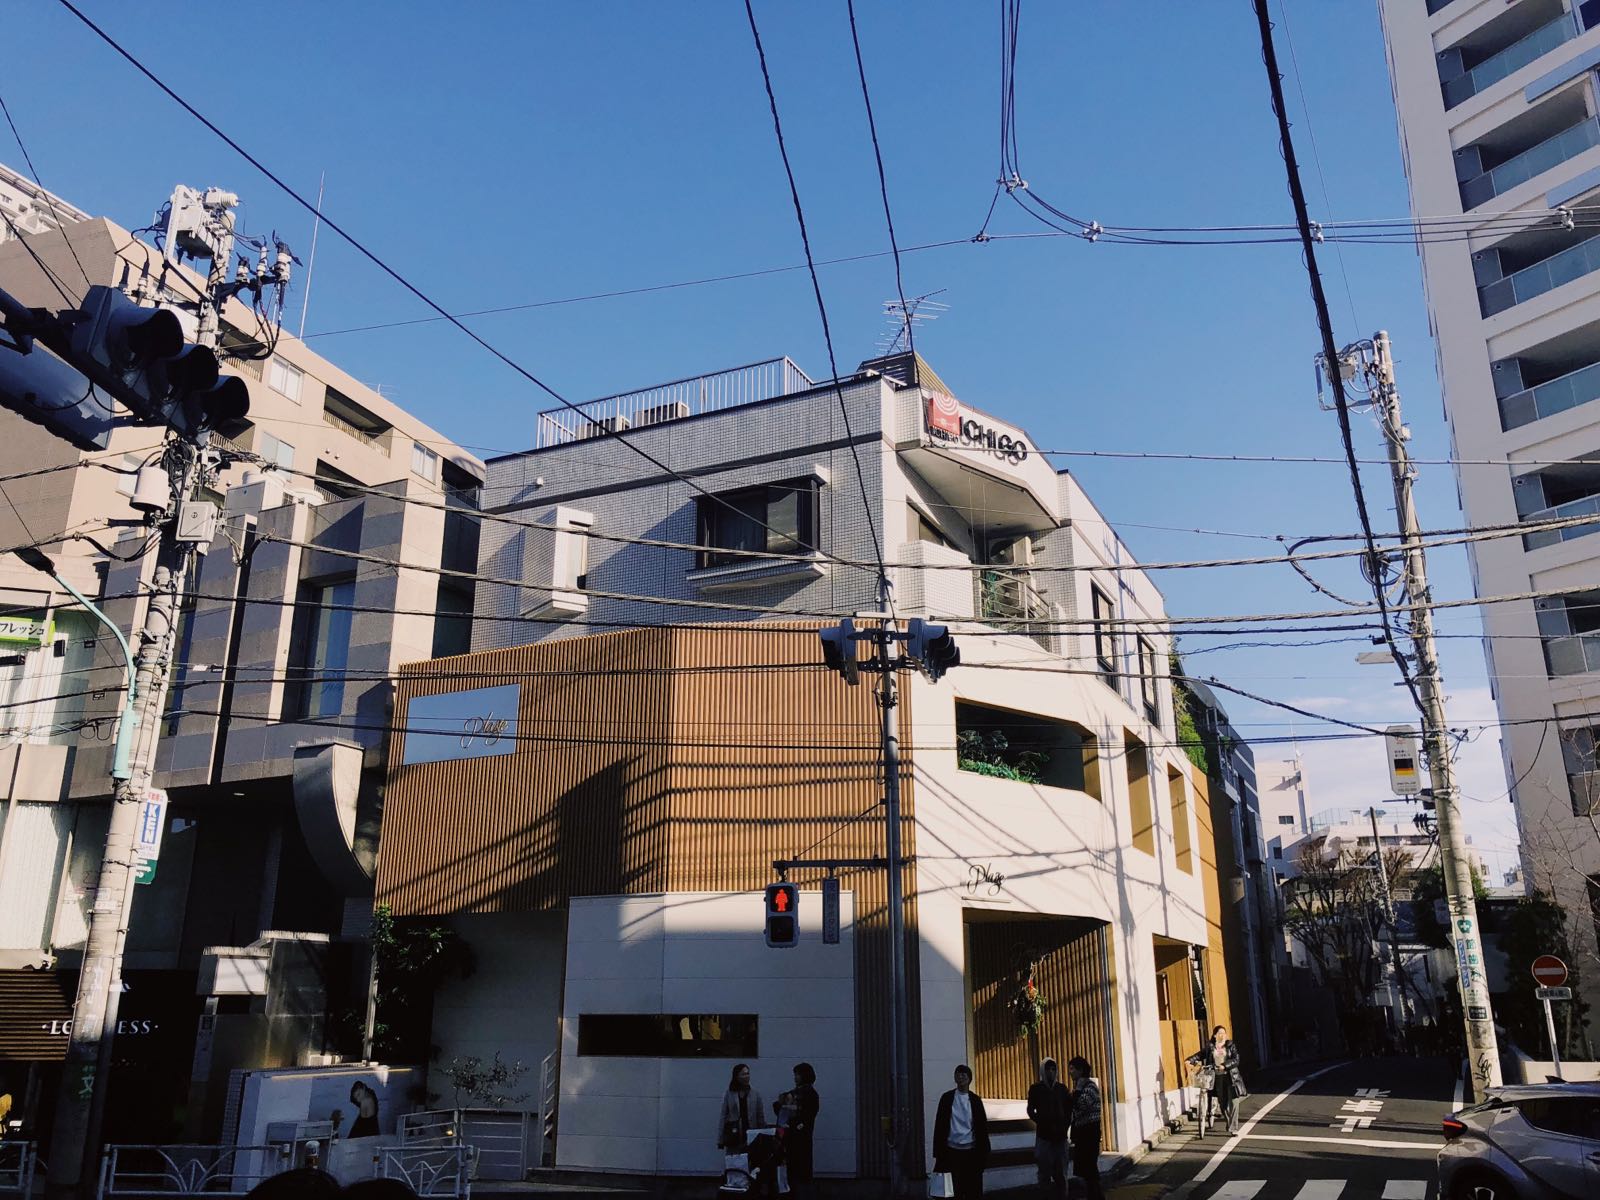 如果你喜欢安静的看东京的街和人，我推荐来代官山，进去茑屋书店，午后的阳